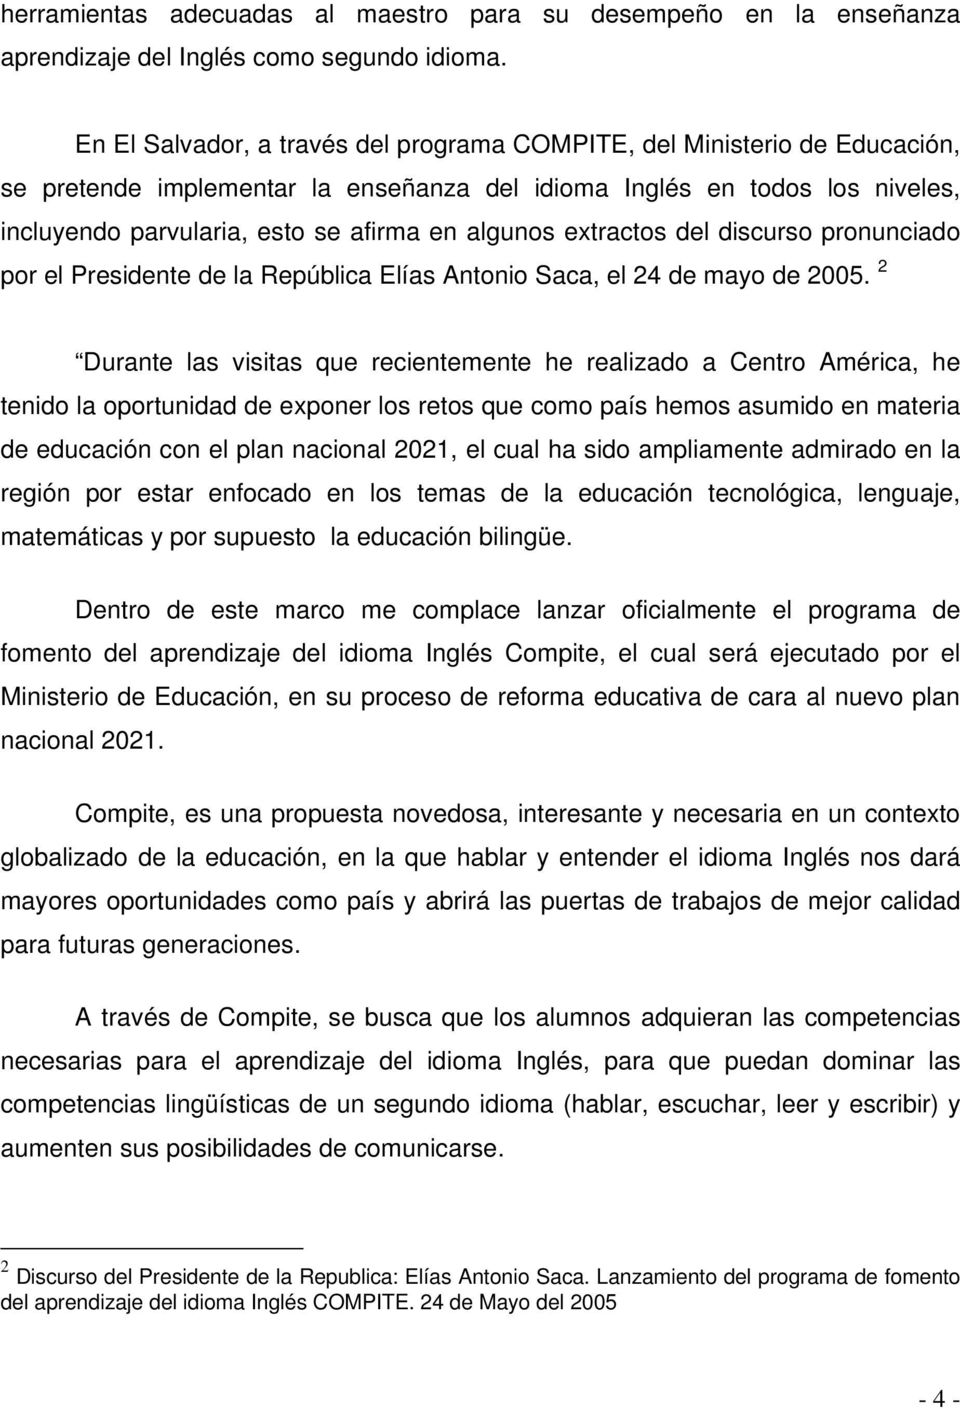 algunos extractos del discurso pronunciado por el Presidente de la República Elías Antonio Saca, el 24 de mayo de 2005.